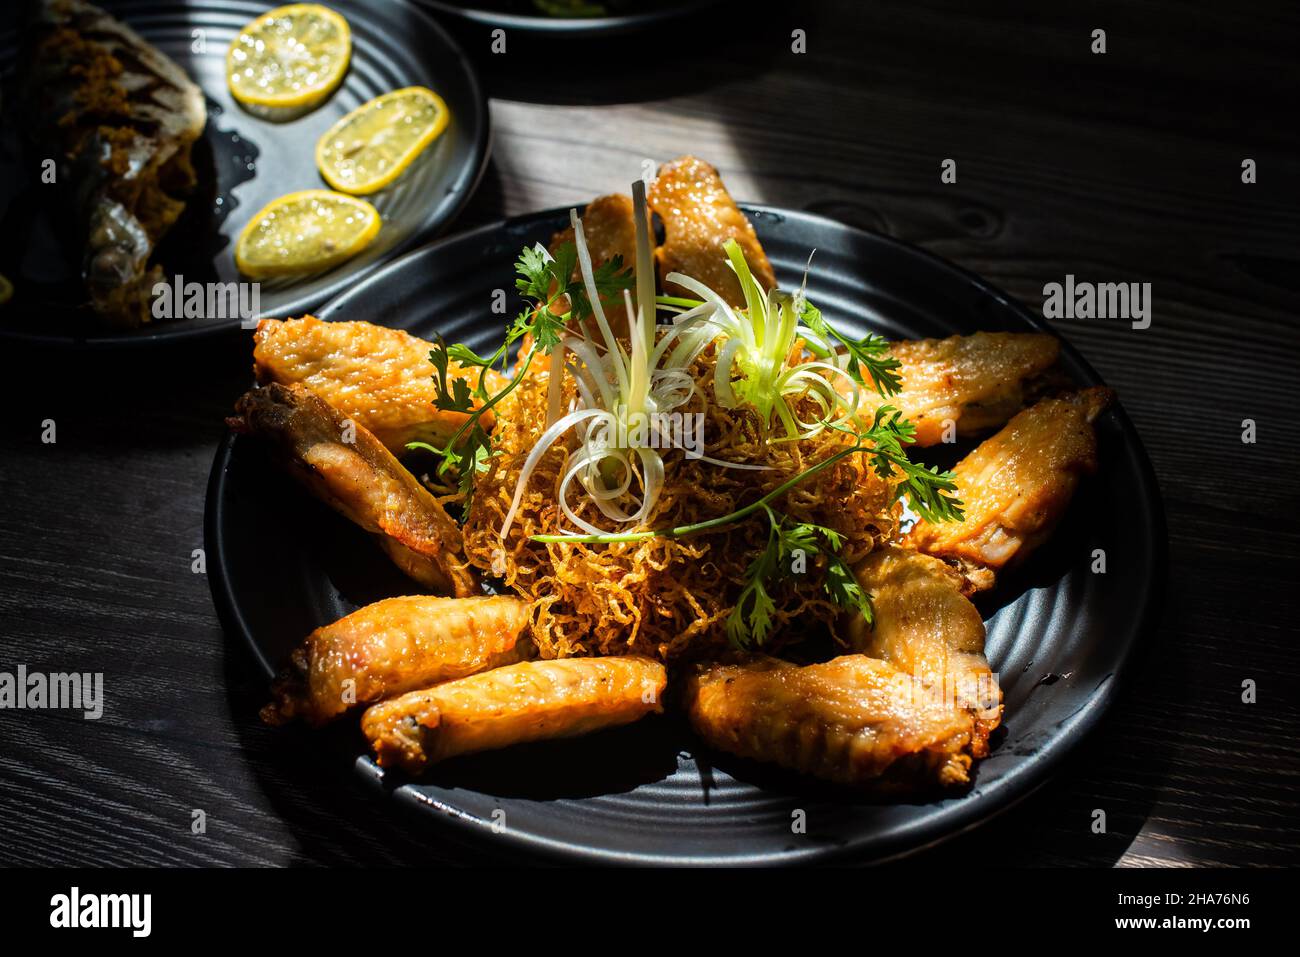 Le ali di pollo fritte con salsa di pesce è un piatto vietnamita molto speciale con ingredienti tra cui le ali di pollo, salsa di pesce e spezie, zucchero, sale... Foto Stock